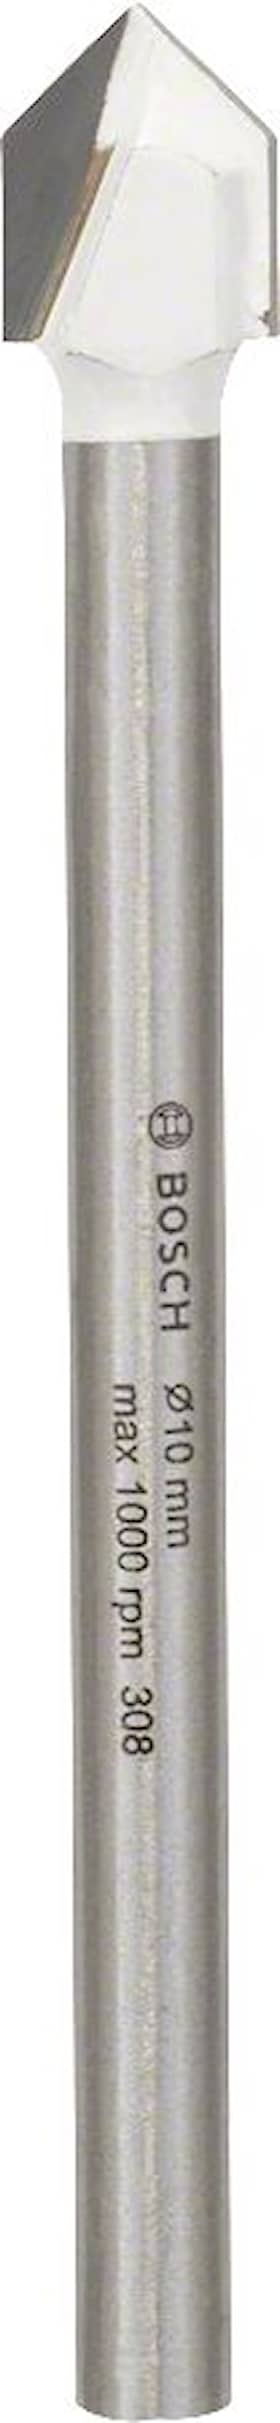 Bosch Kakelborr CYL-9 10x90mm